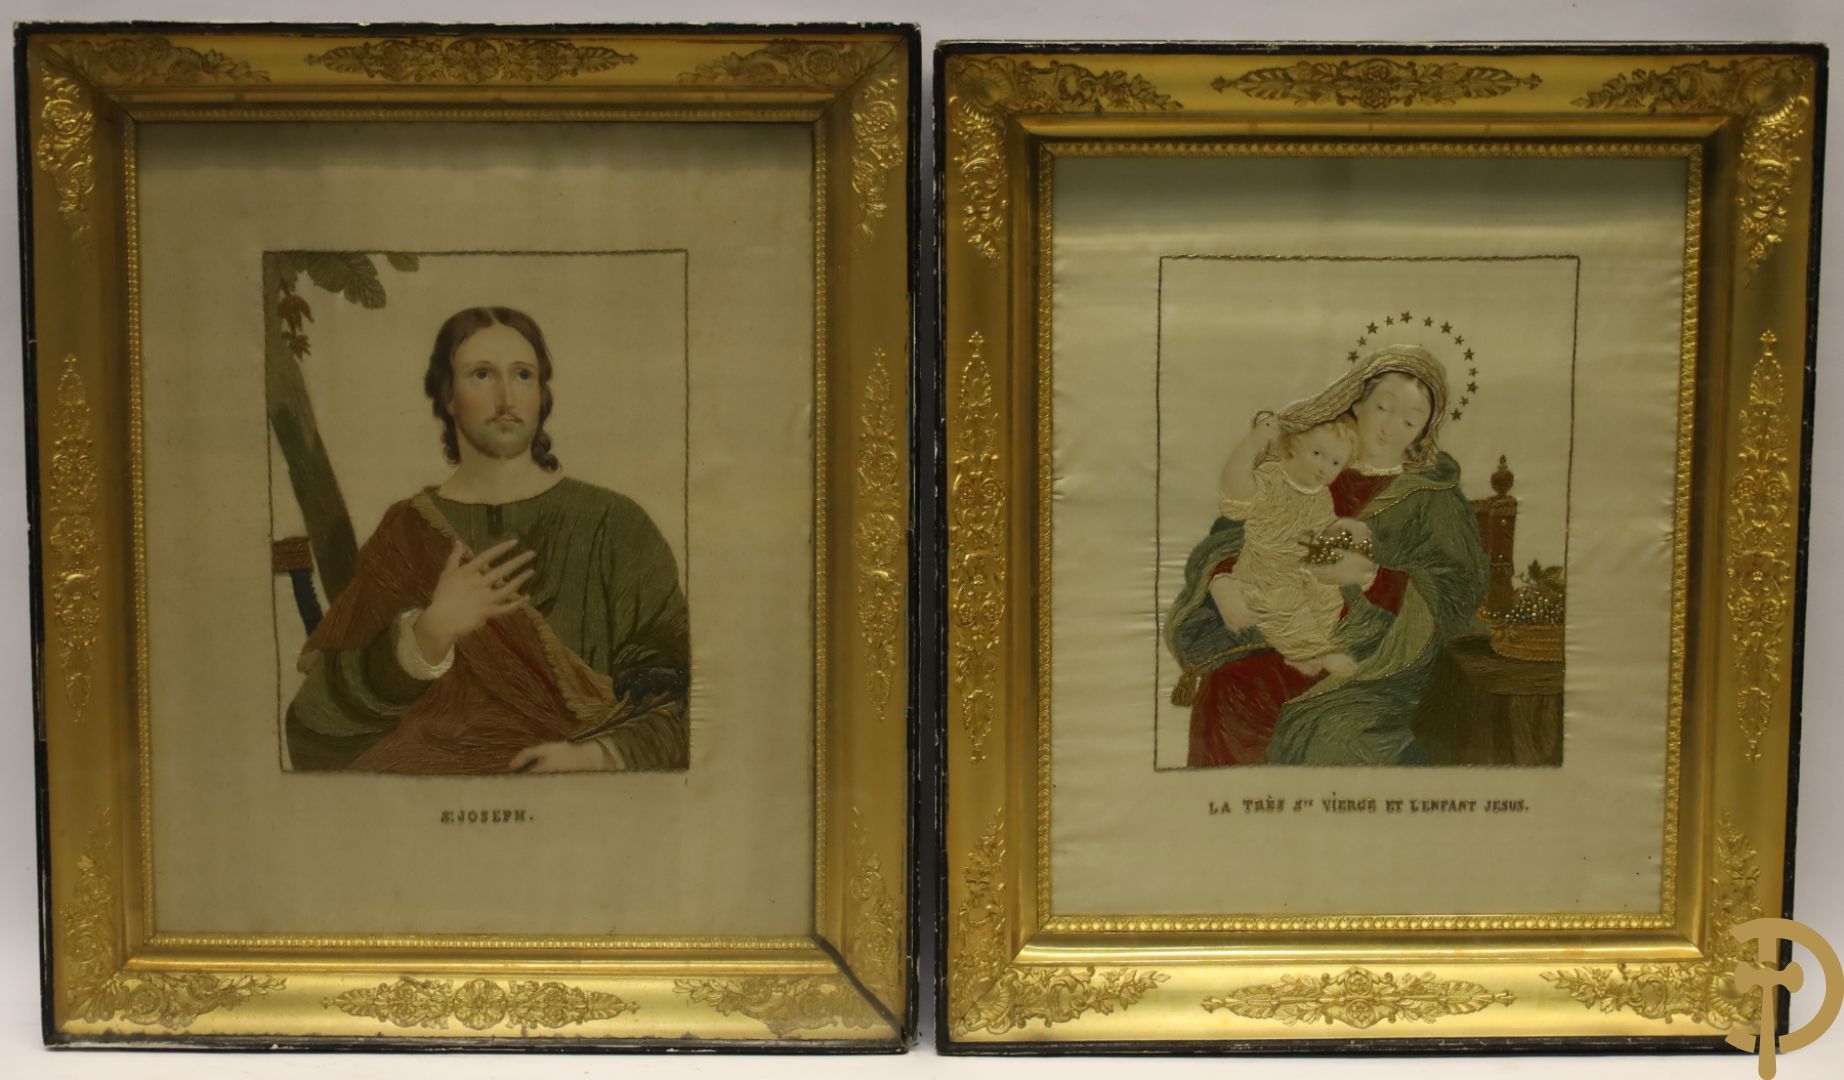 Null 鎏金帝国框架内的宗教锦缎 "圣约瑟夫 "和 "La très Ste. Vierge et l enfant Jesus" | 71 x 60